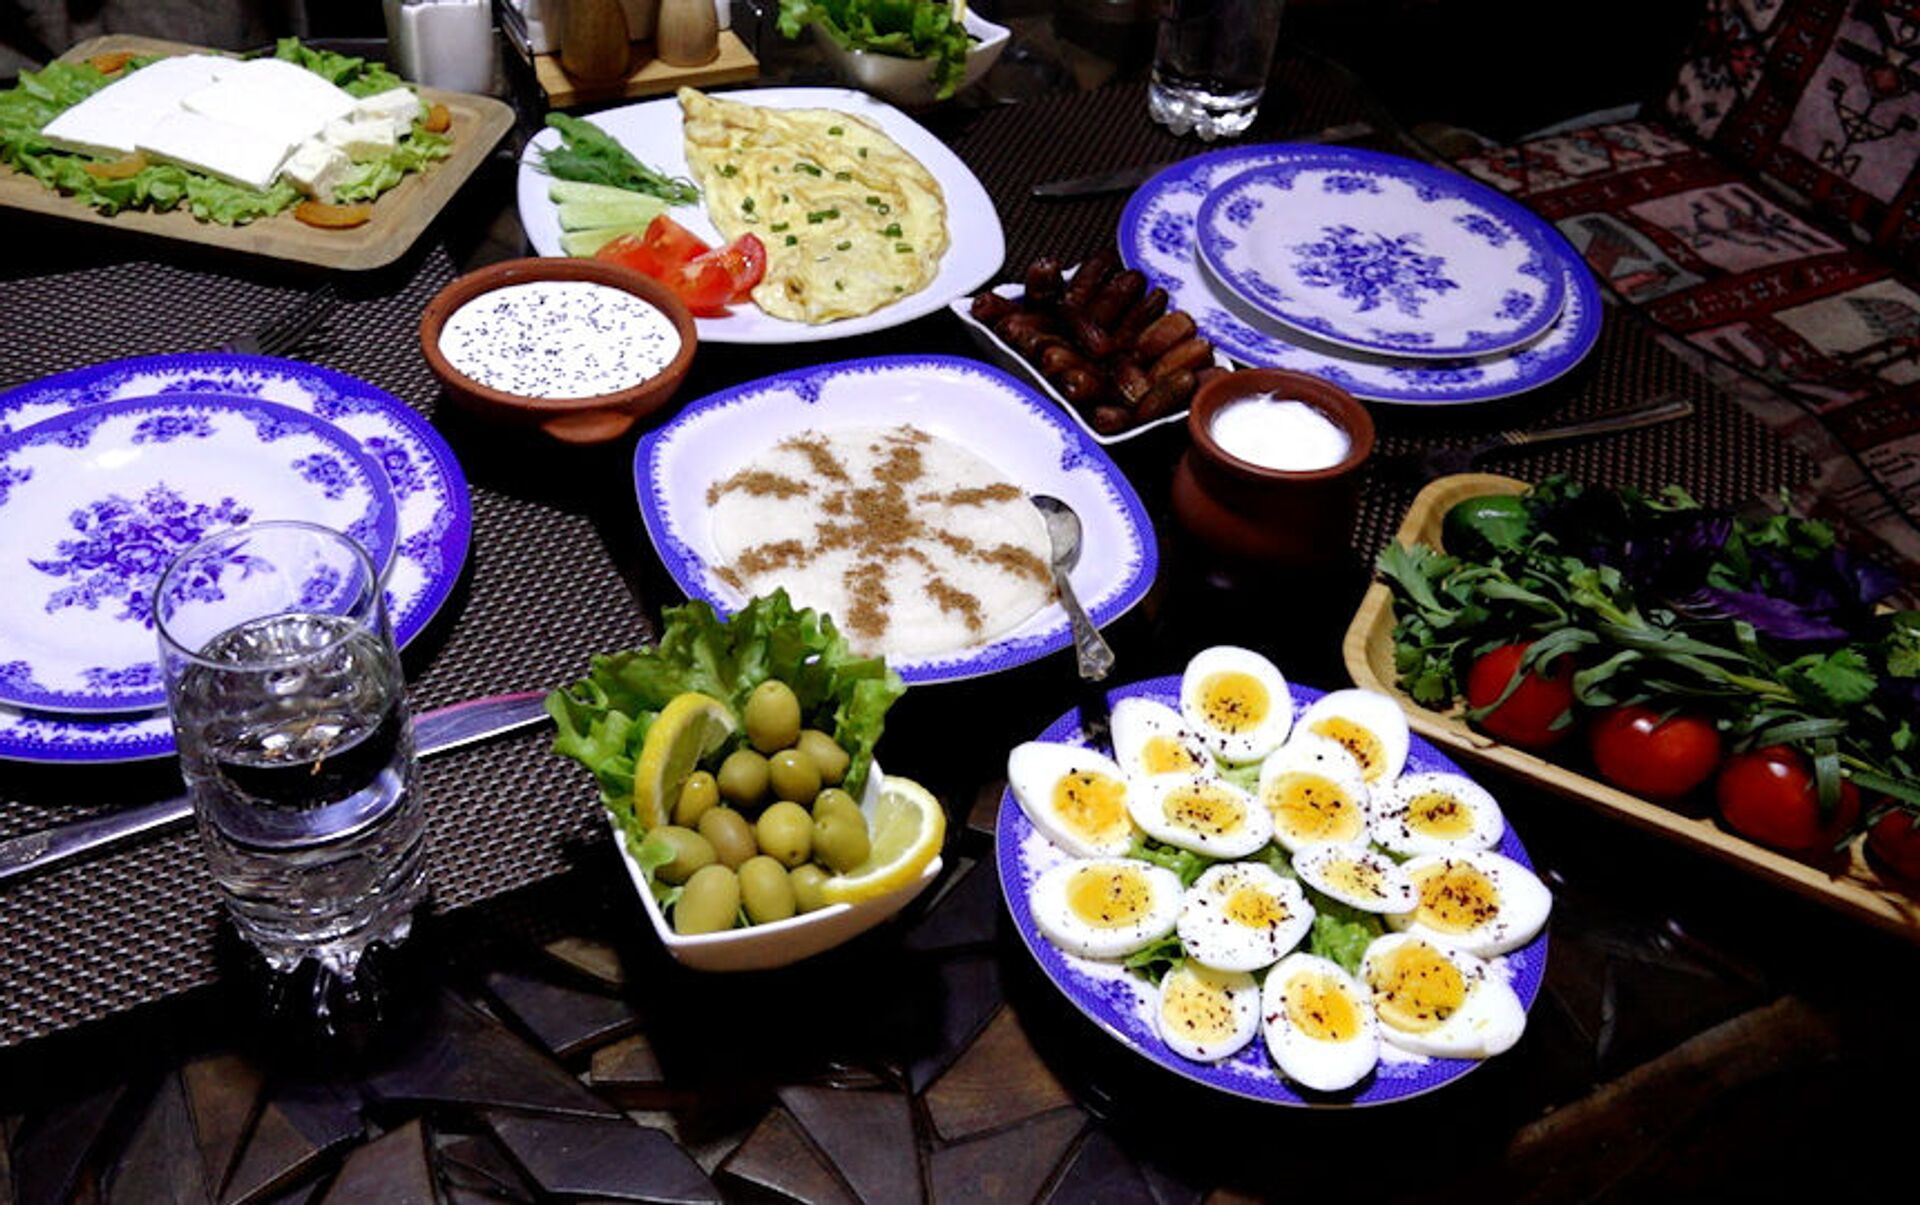 Что поесть на сухур. Рамазан меню. Блюда и салаты фон ифтар. Меню на Рамазан месяц. Фото стола на сухур.